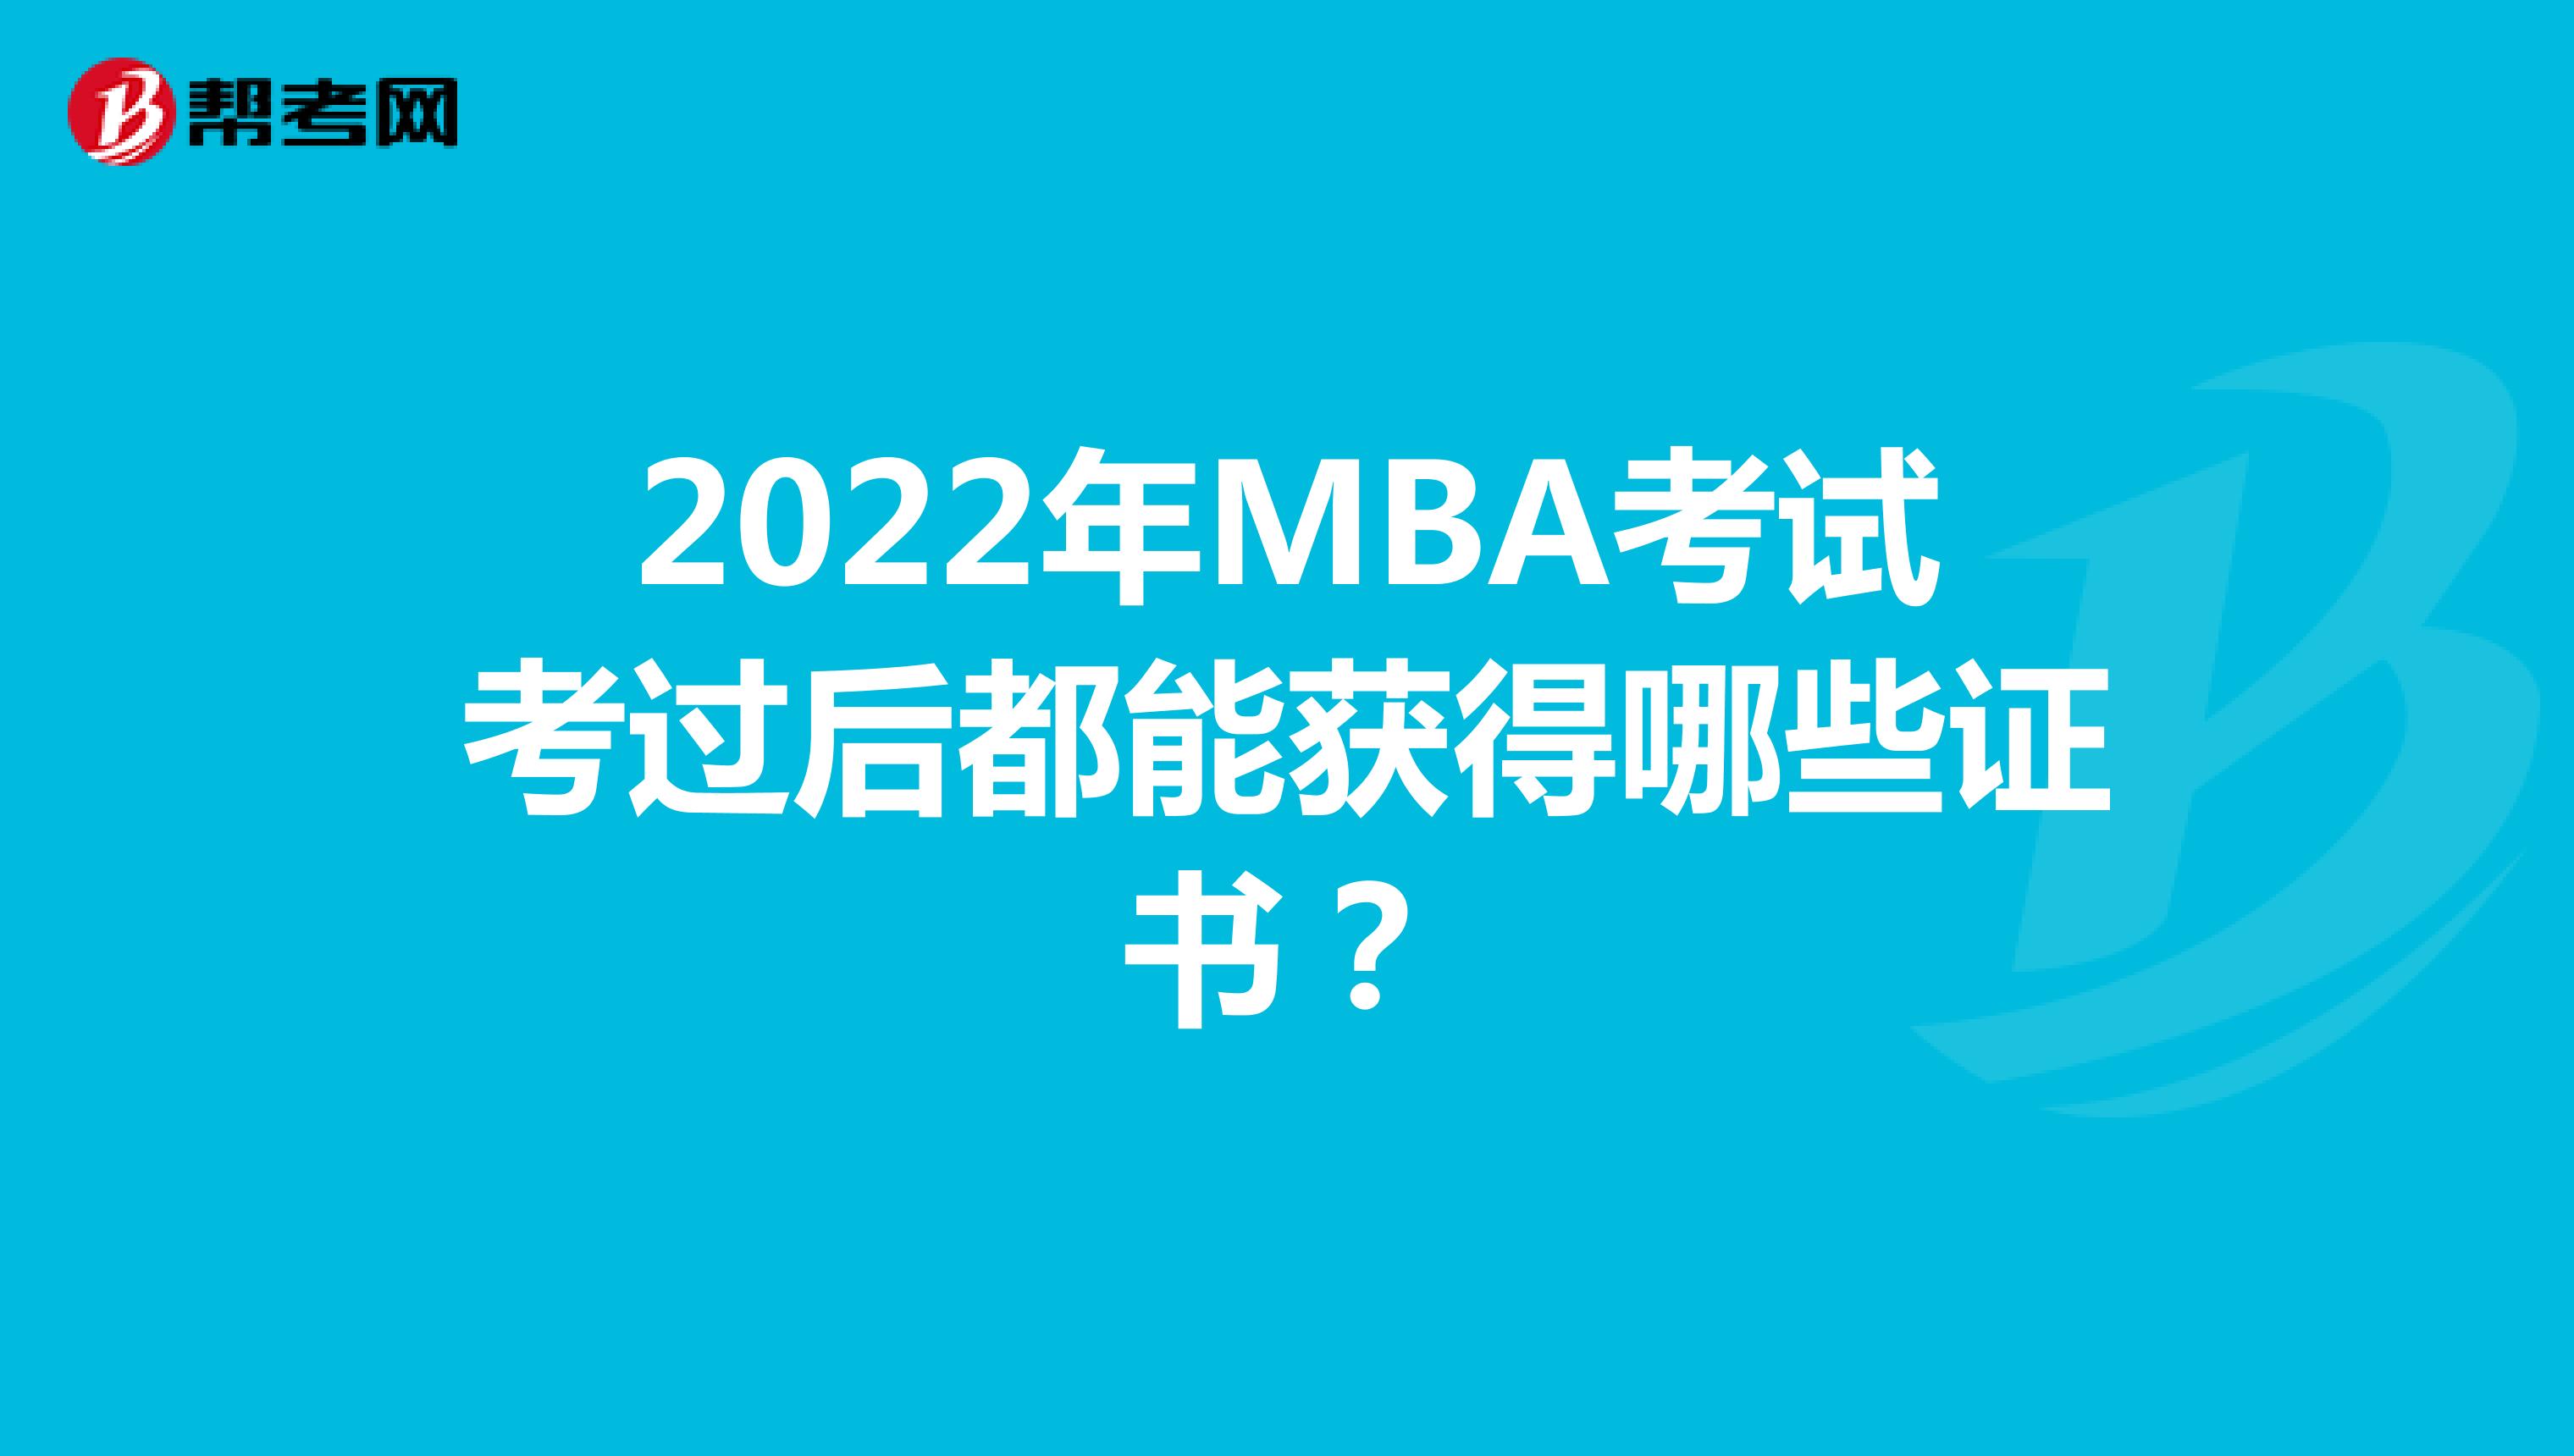 2022年MBA考试考过后都能获得哪些证书？